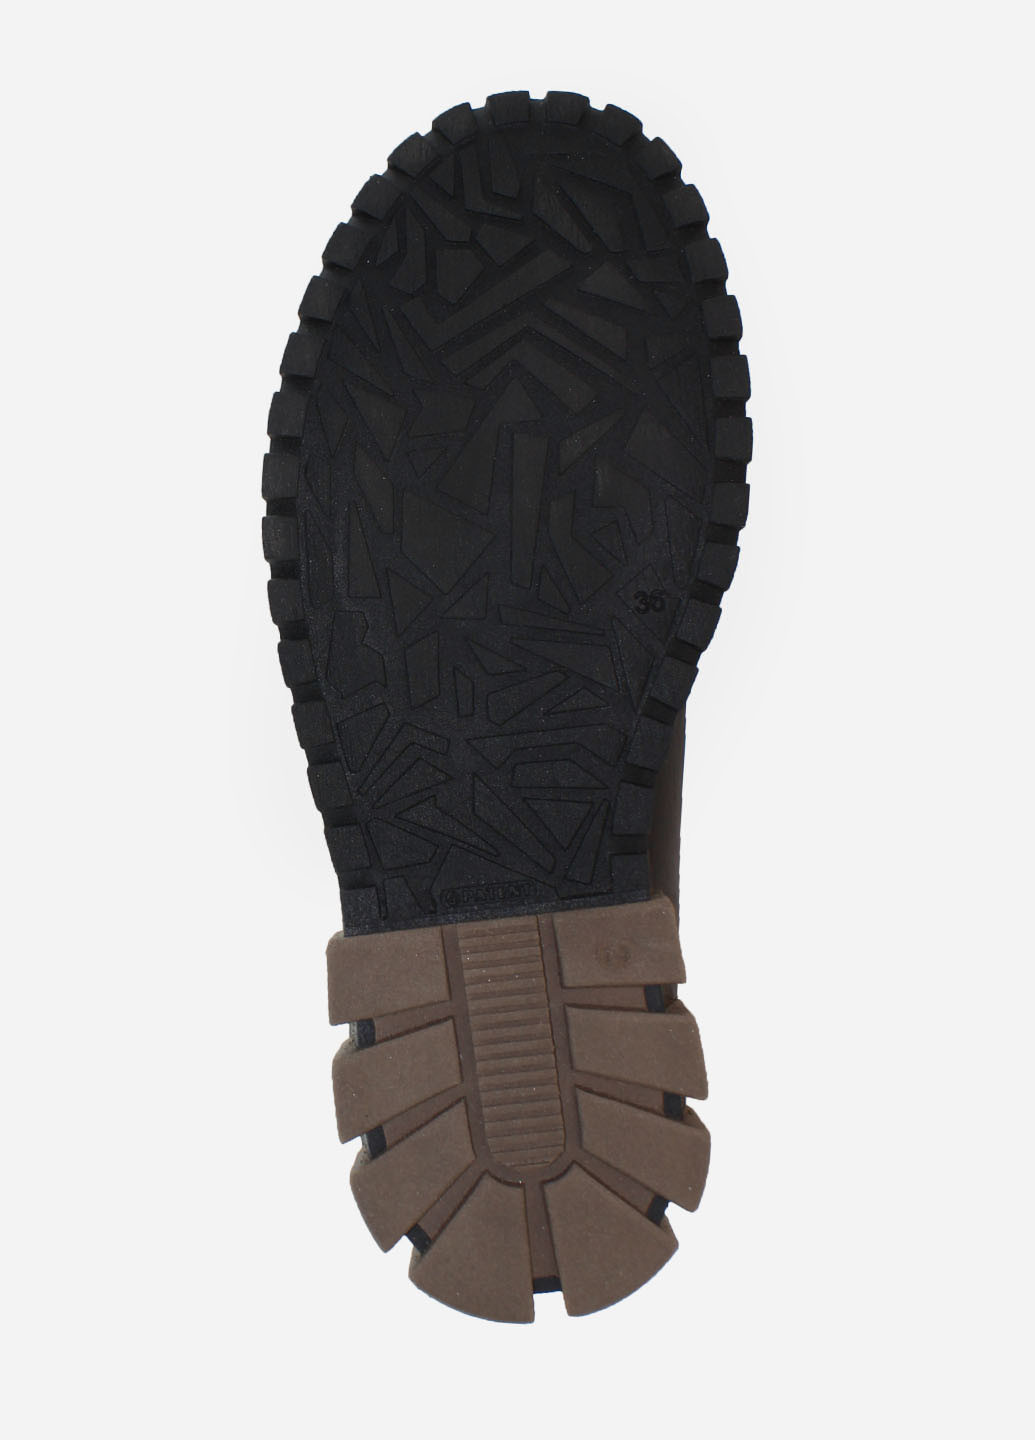 Зимние ботинки rg238-1 черный Gampr